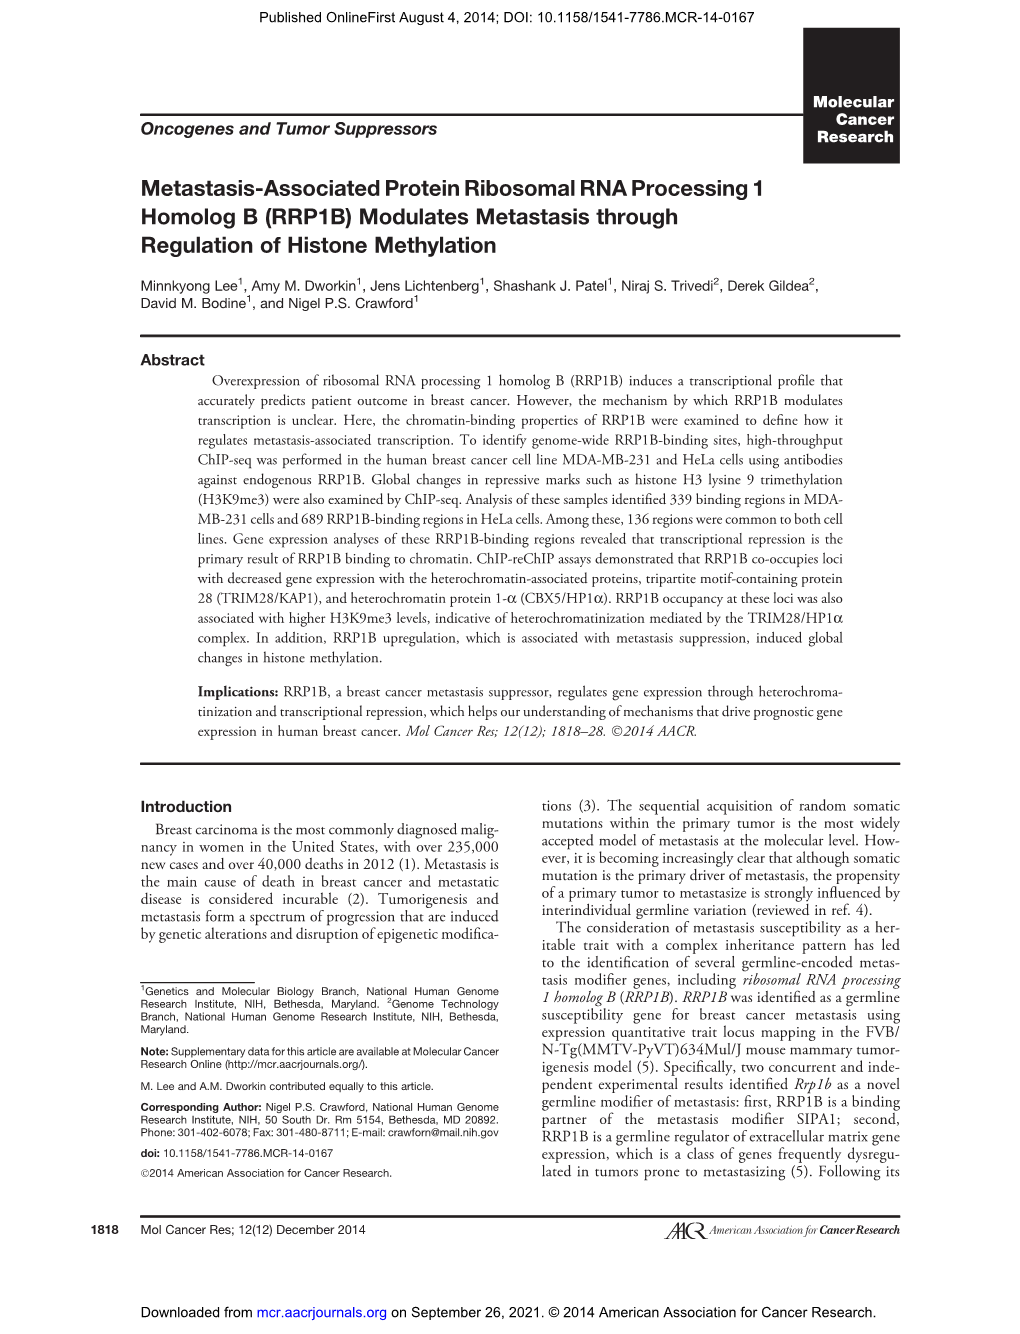 (RRP1B) Modulates Metastasis Through Regulation of Histone Methylation